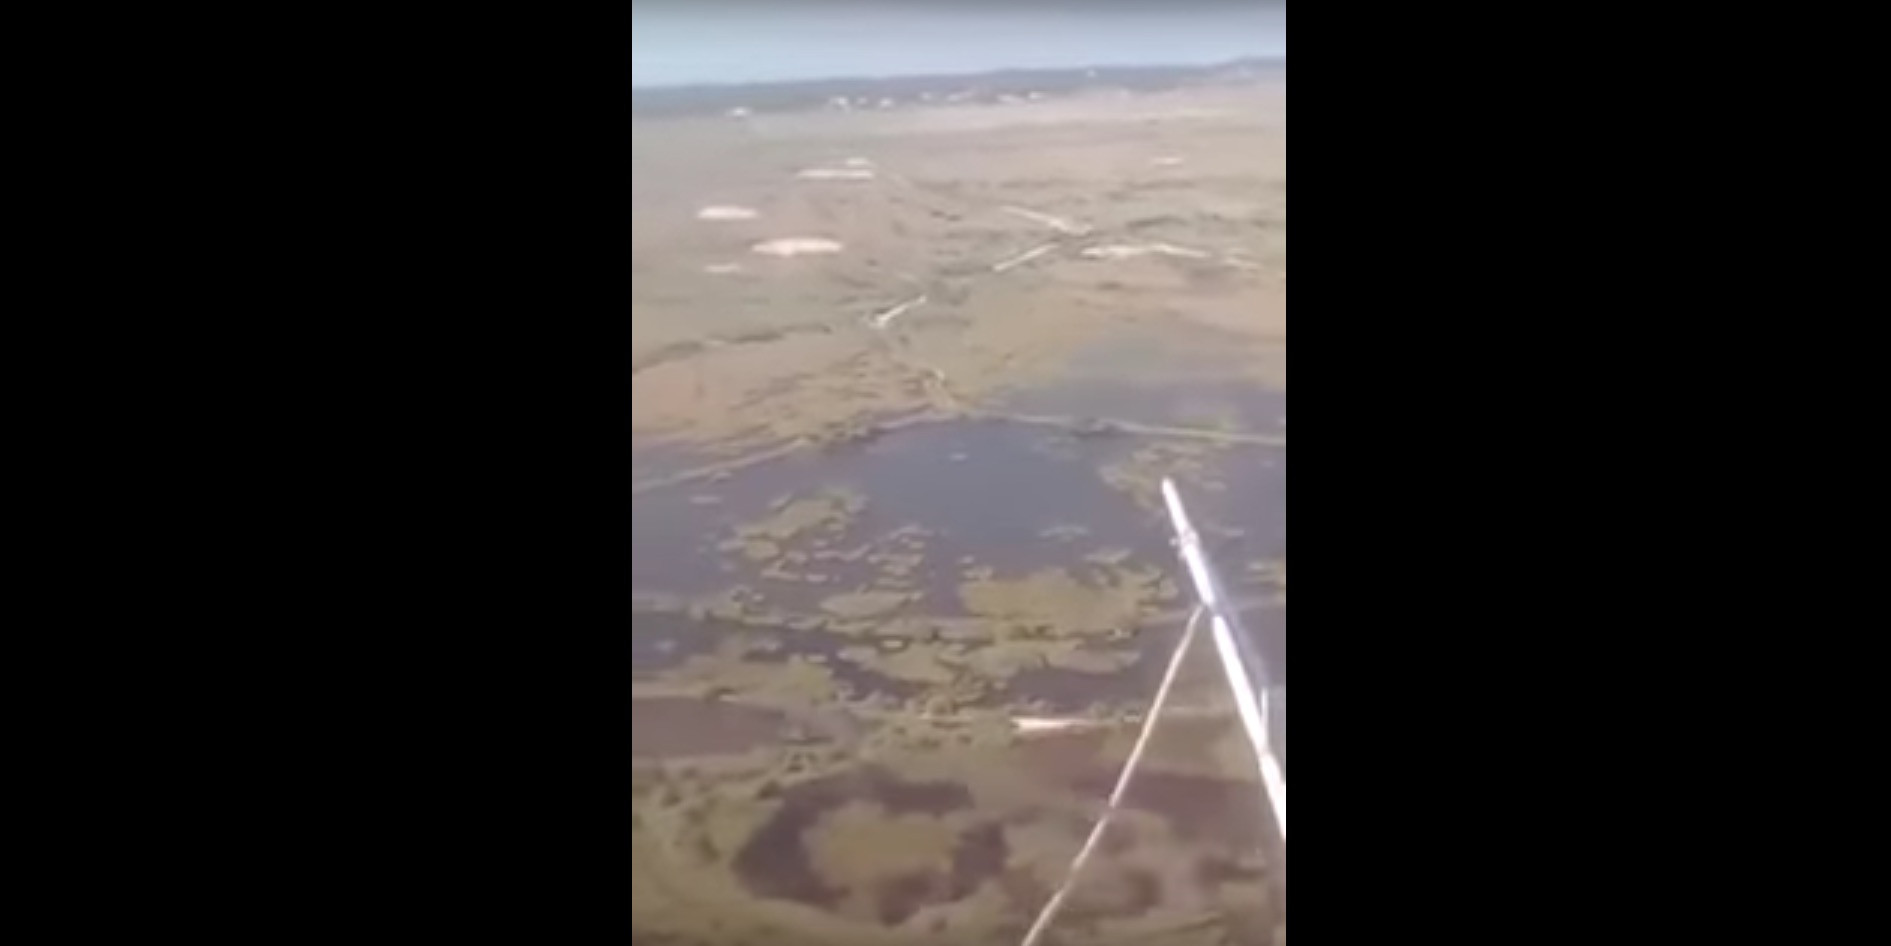 Βίντεο ντοκουμέντο μέσα από το ψεκαστικό ελικόπτερο: Η πτώση μεταδόθηκε live στο Facebook